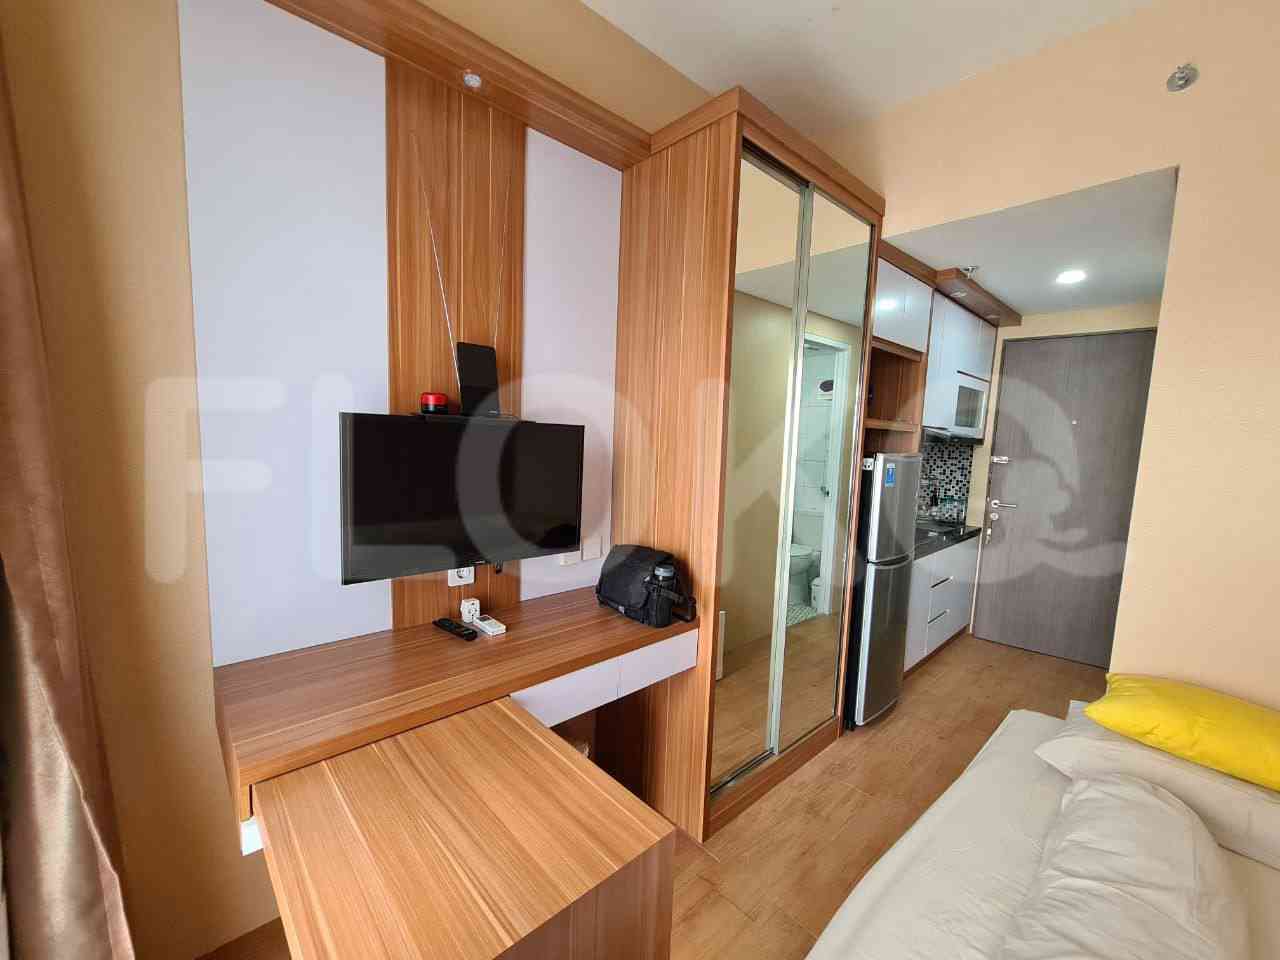 Tipe 1 Kamar Tidur di Lantai 2 untuk disewakan di Emerald Residence Apartemen - fbi08e 6